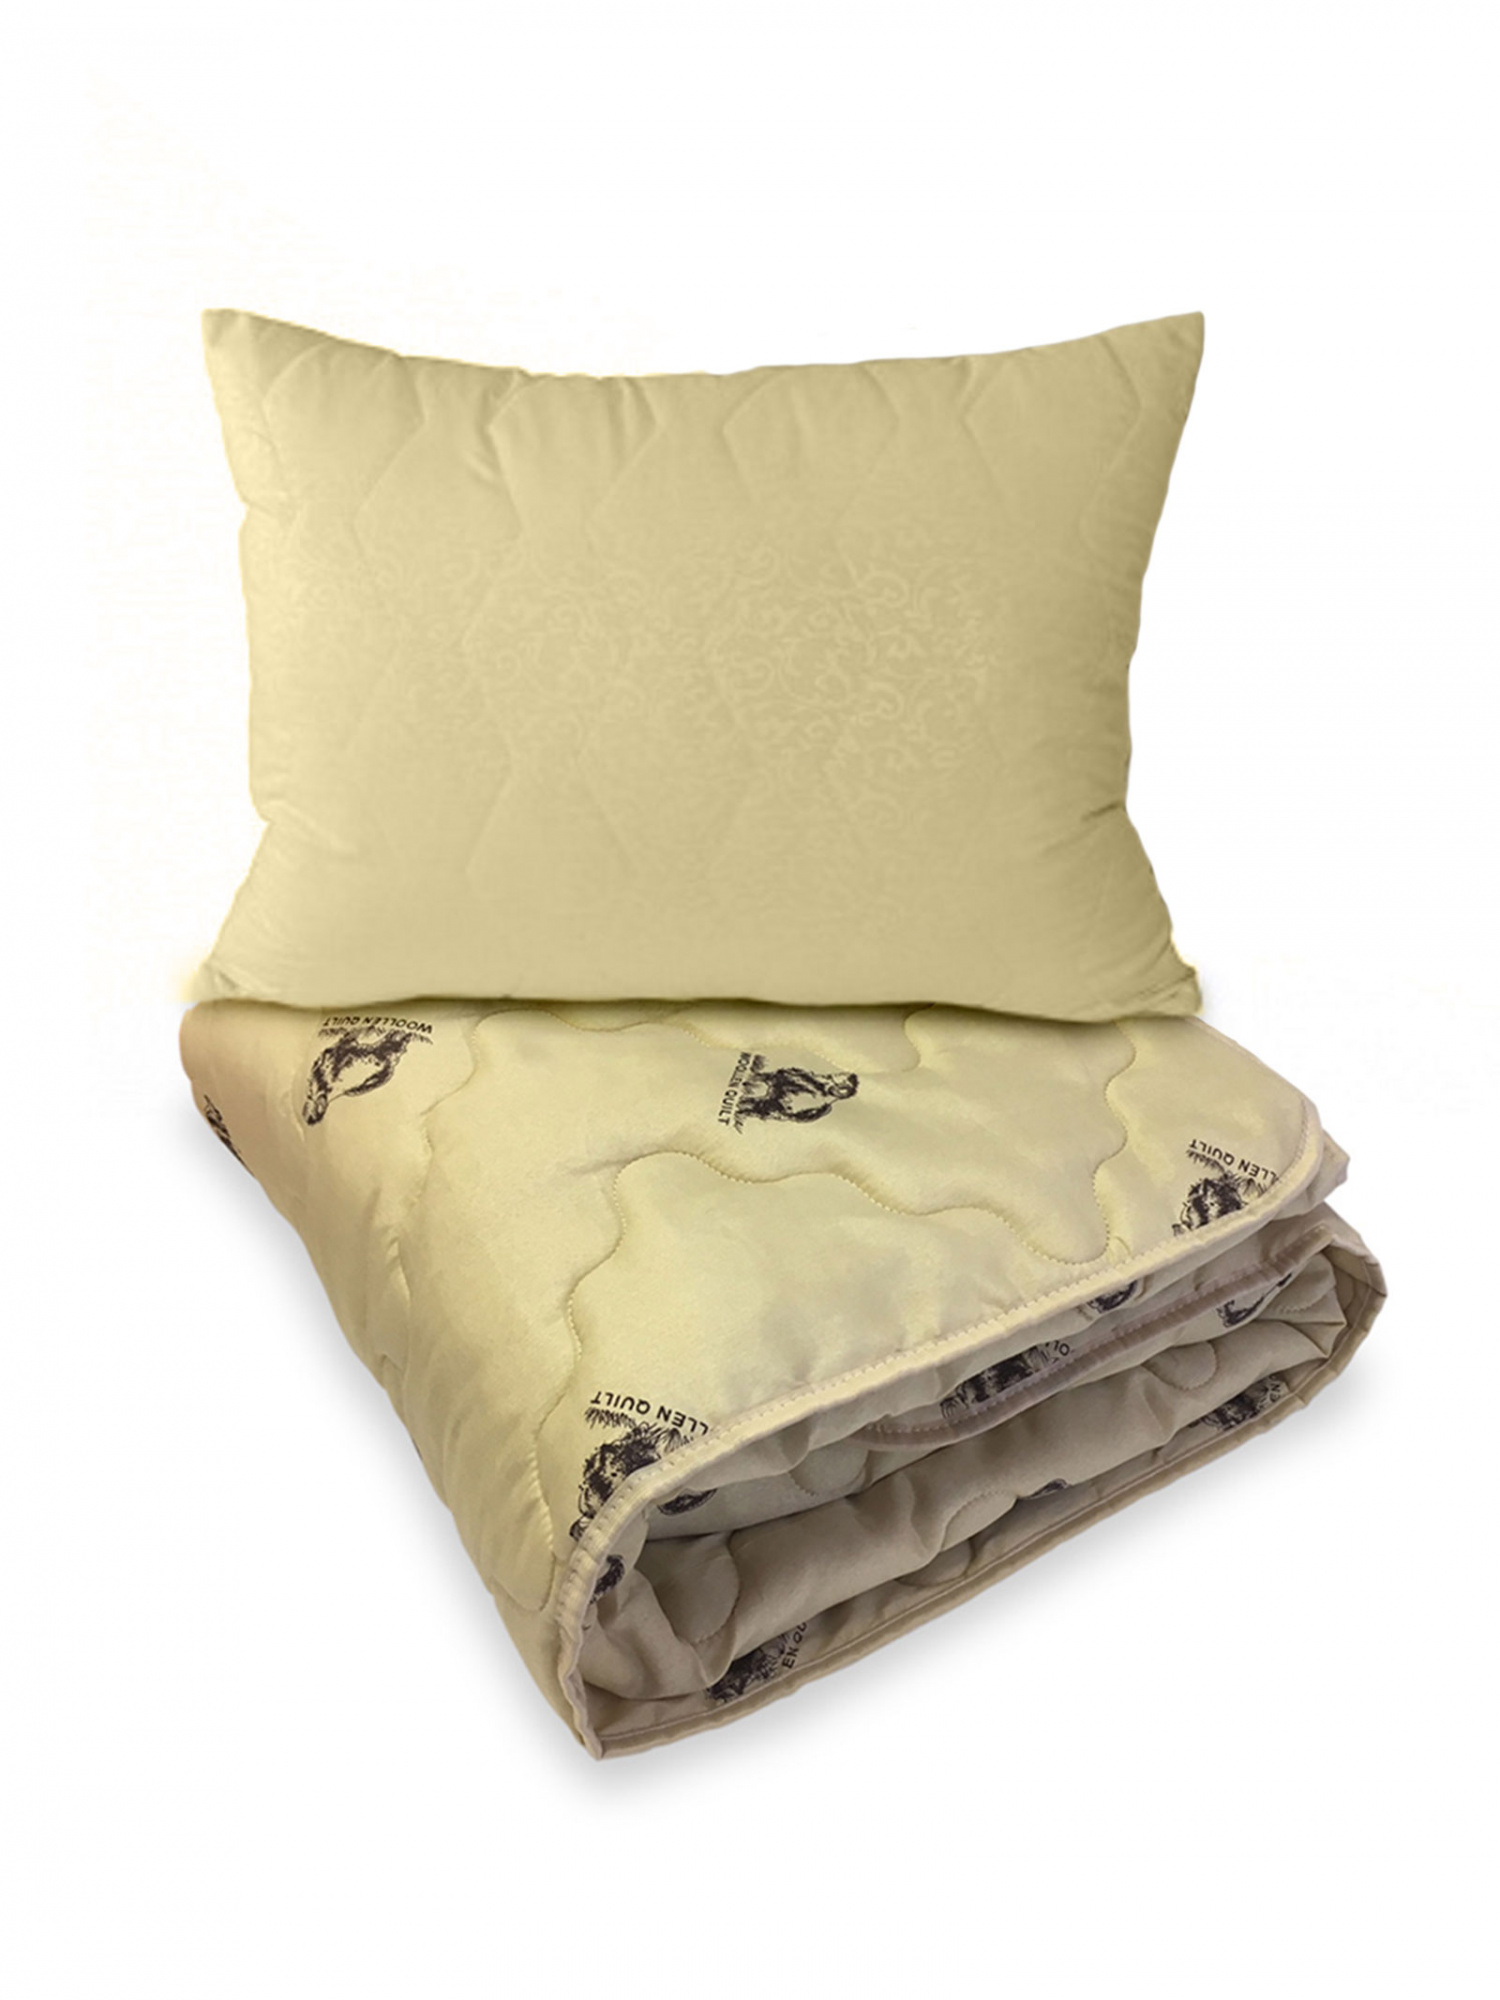 фото Всесезонное одеяло 1,5 и подушка с овечьей шерстью 50х70 ol-tex мшпэ-15-3+мшм-57